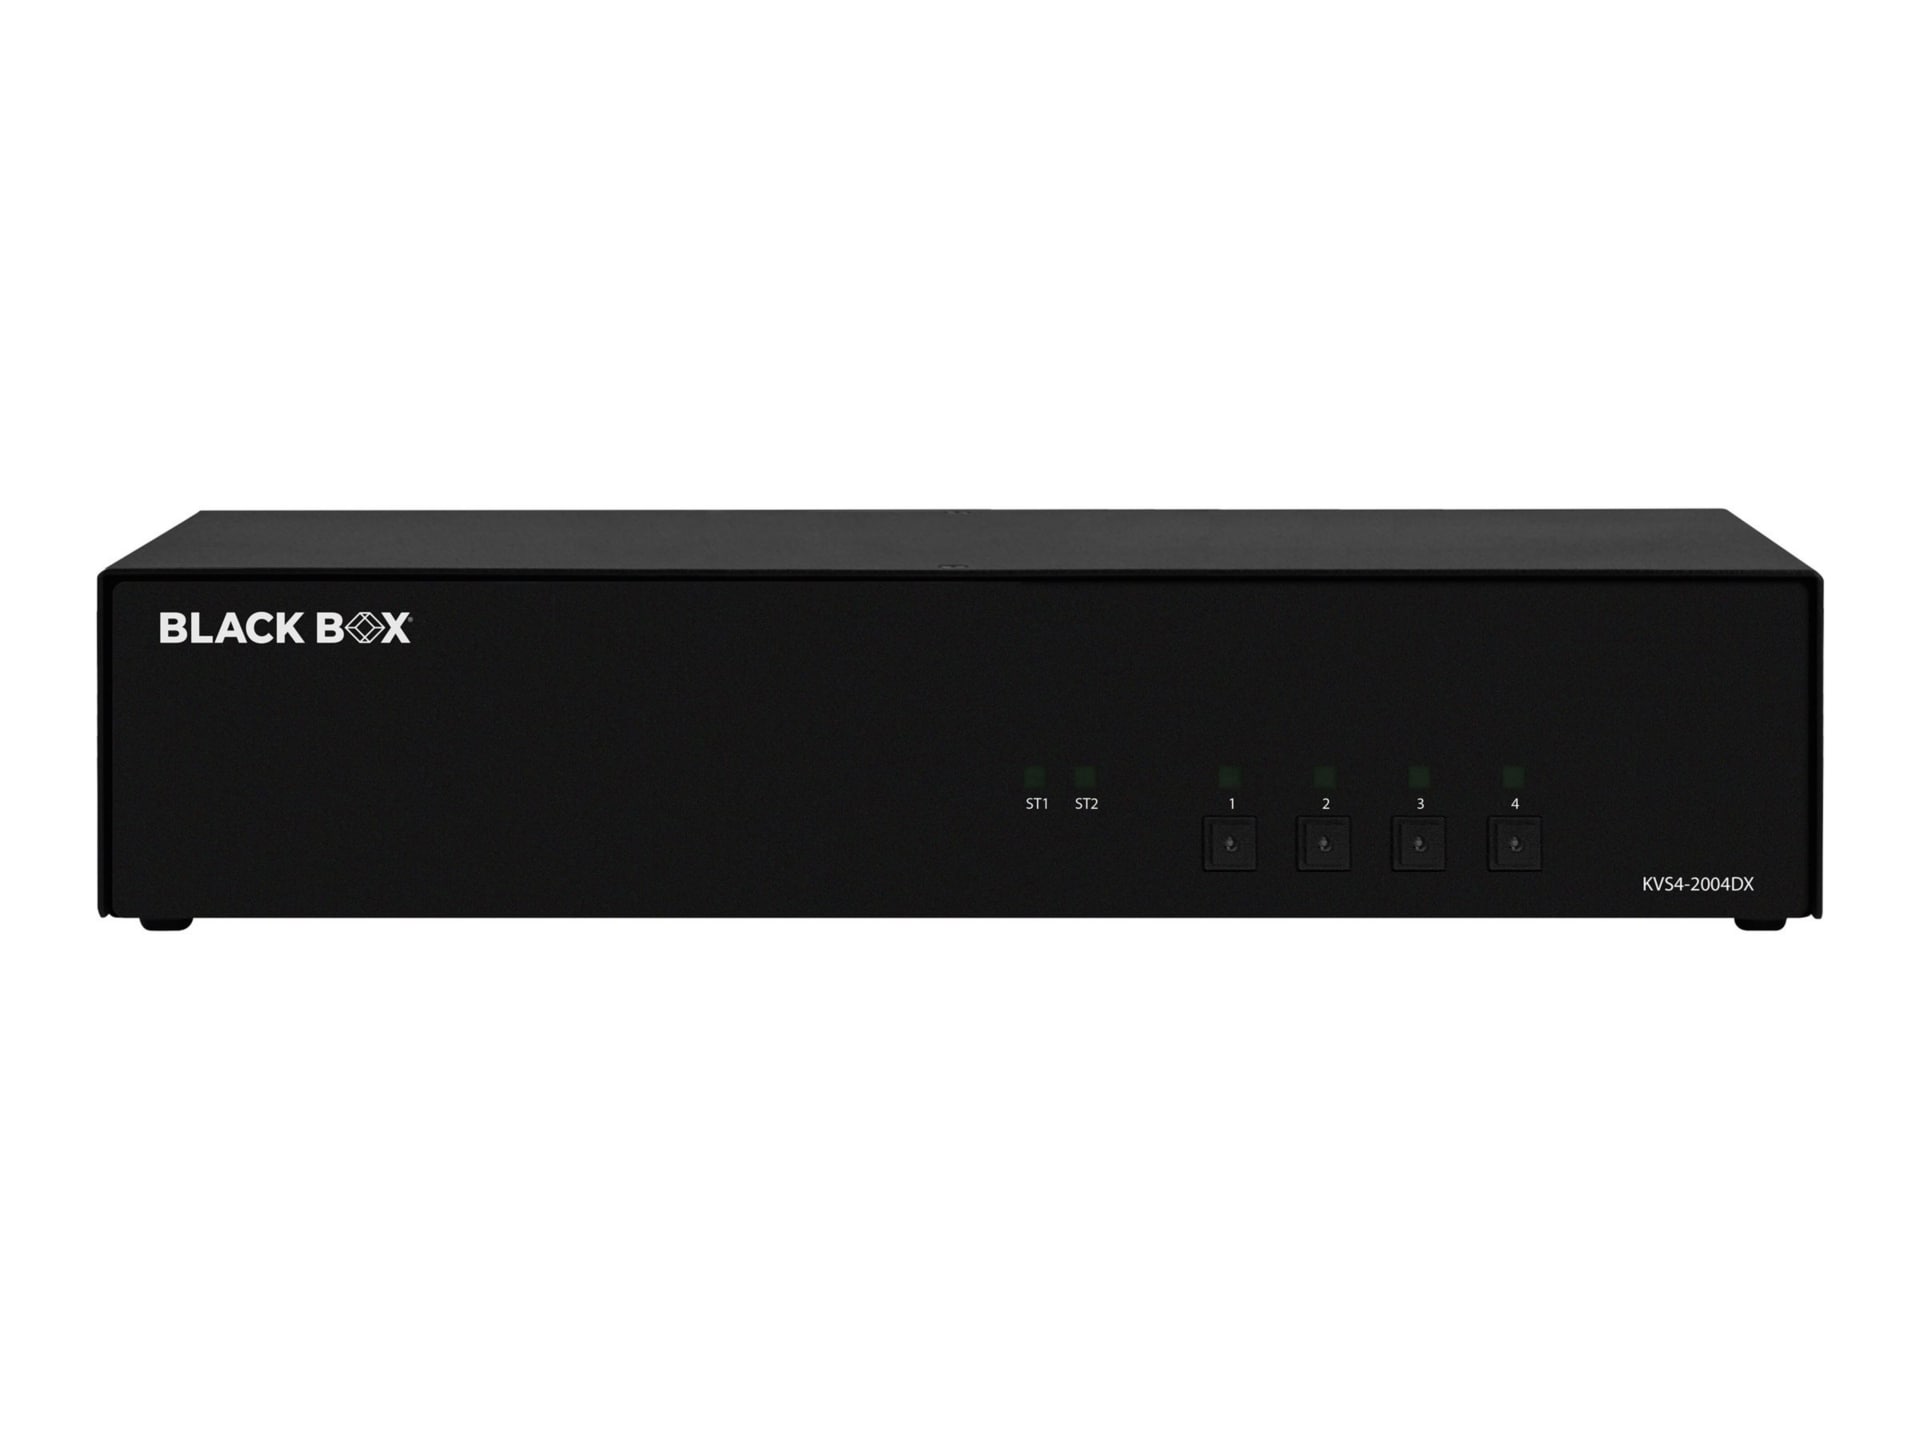 Black Box SECURE KVS4-2004DX - KVM / audio switch - 4 ports